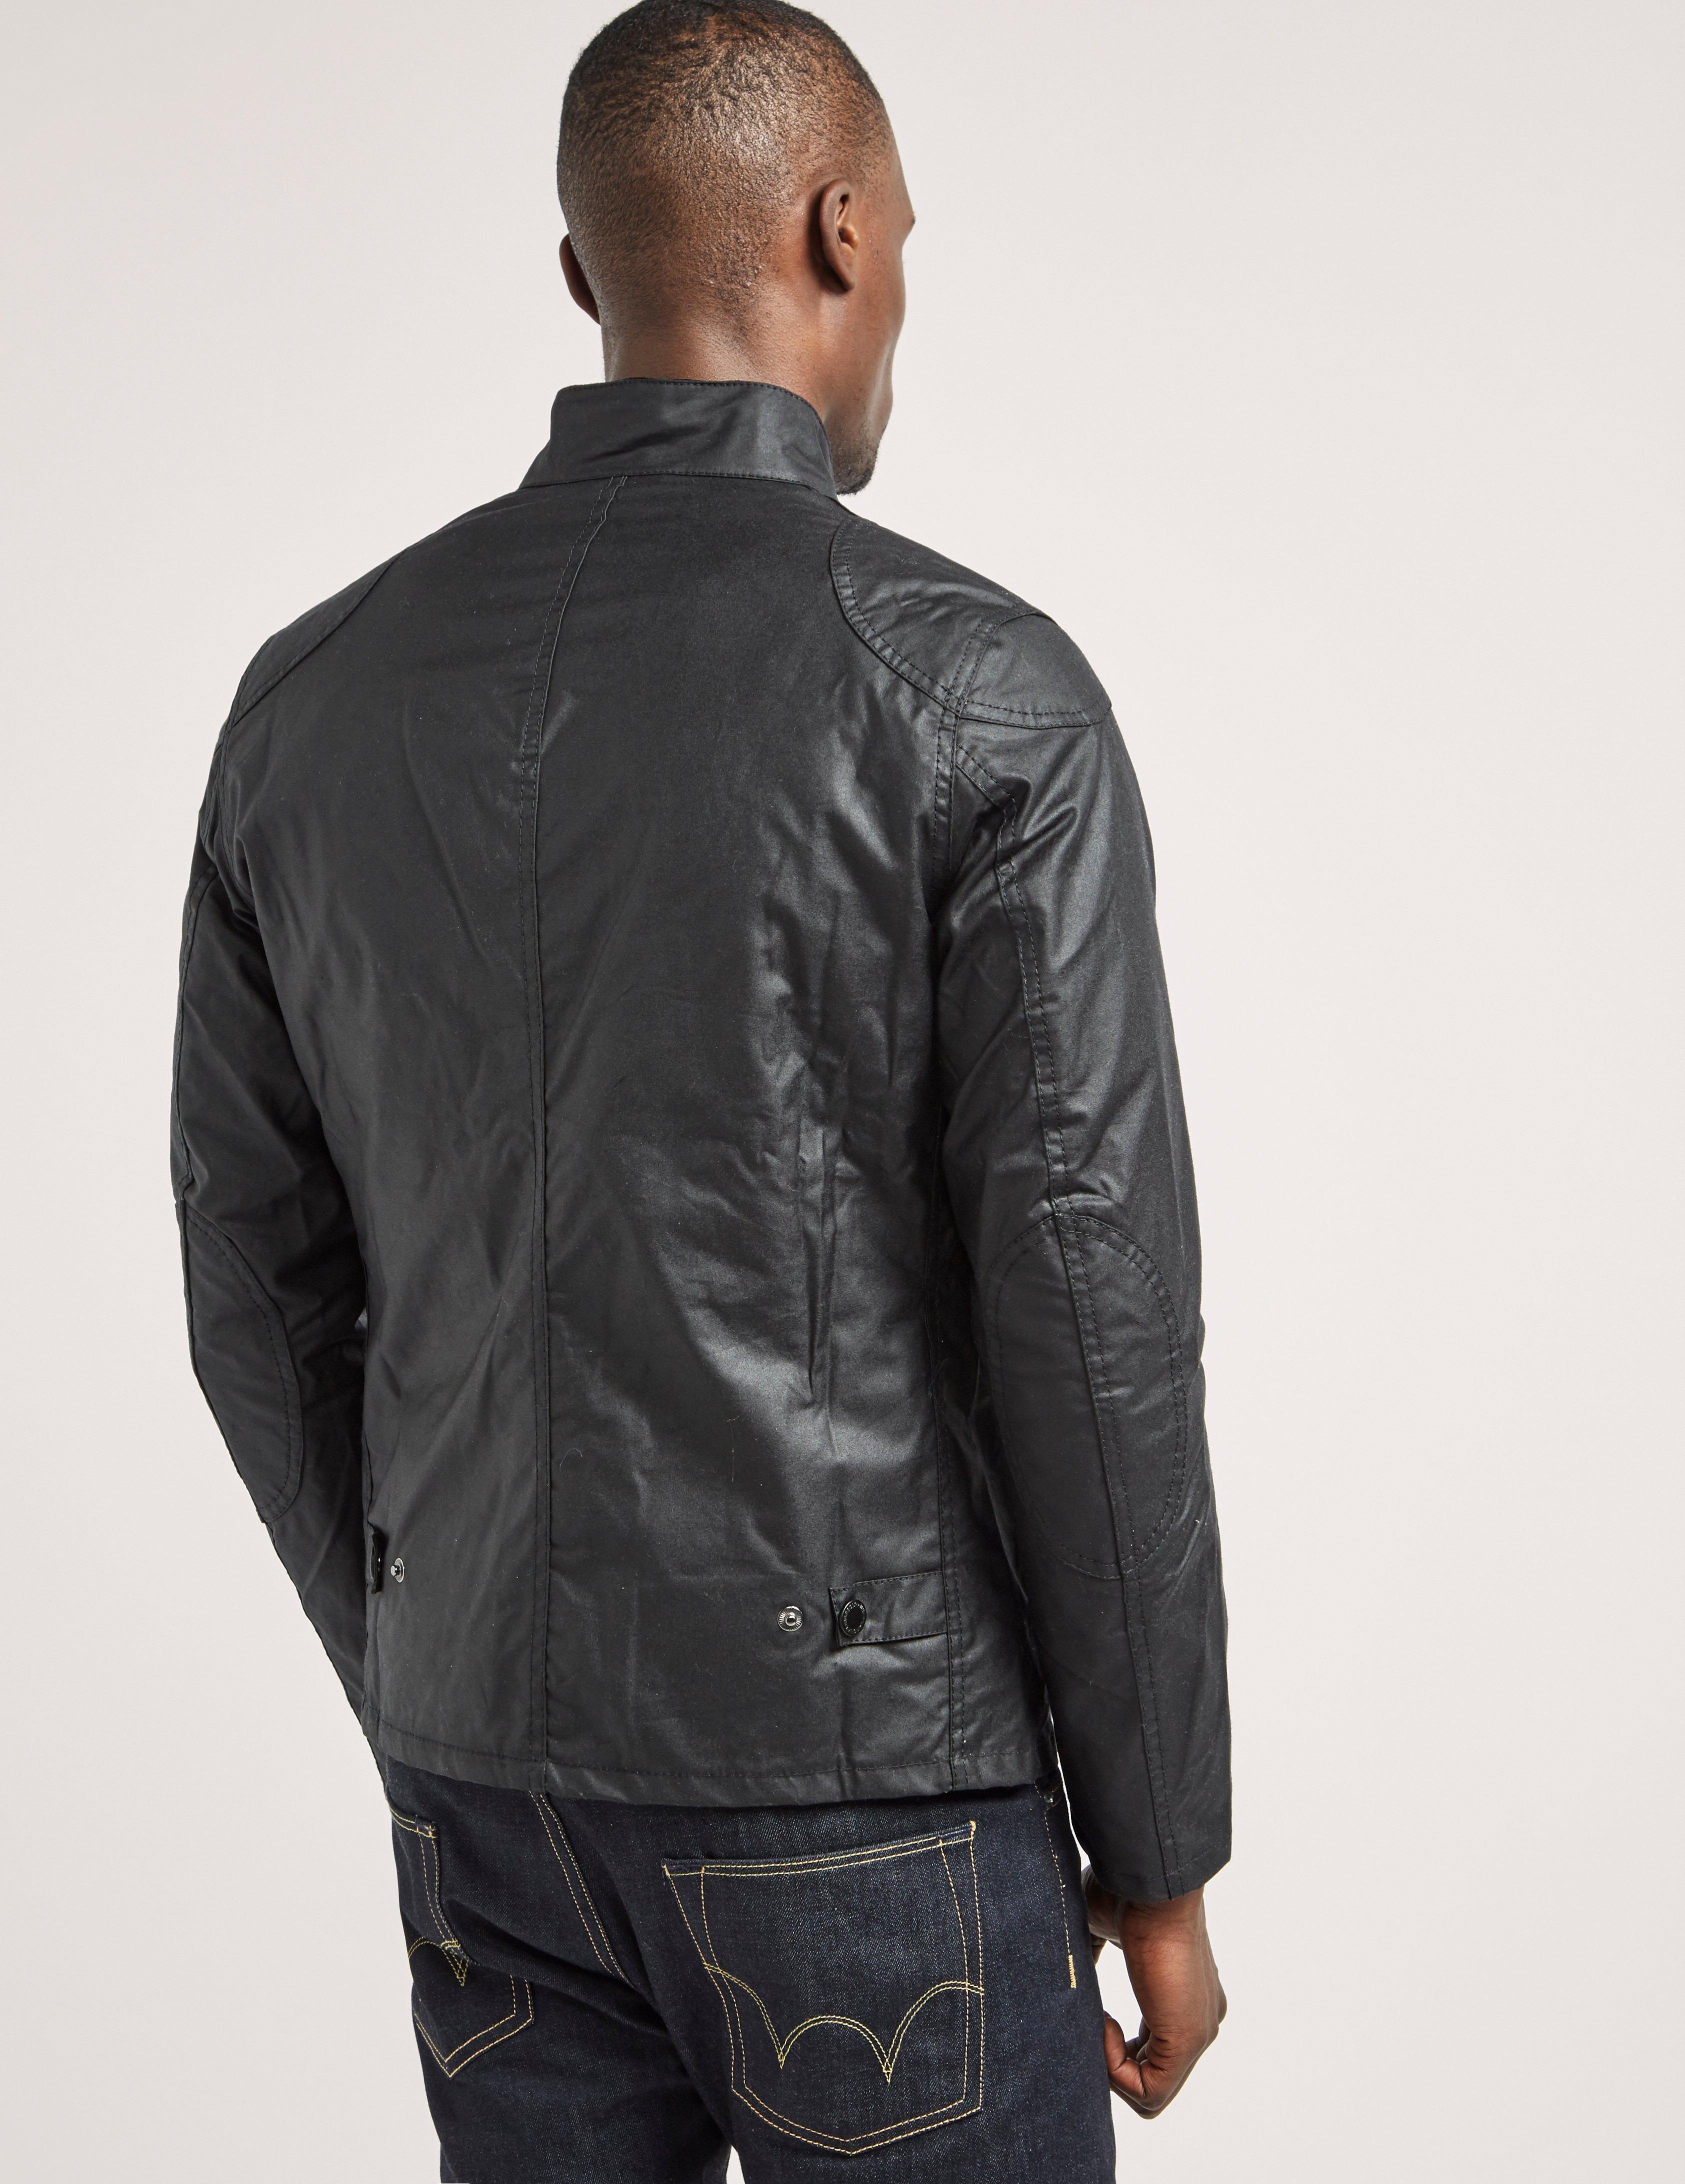 Lyst - Barbour International Rebel Jacket in Black for Men